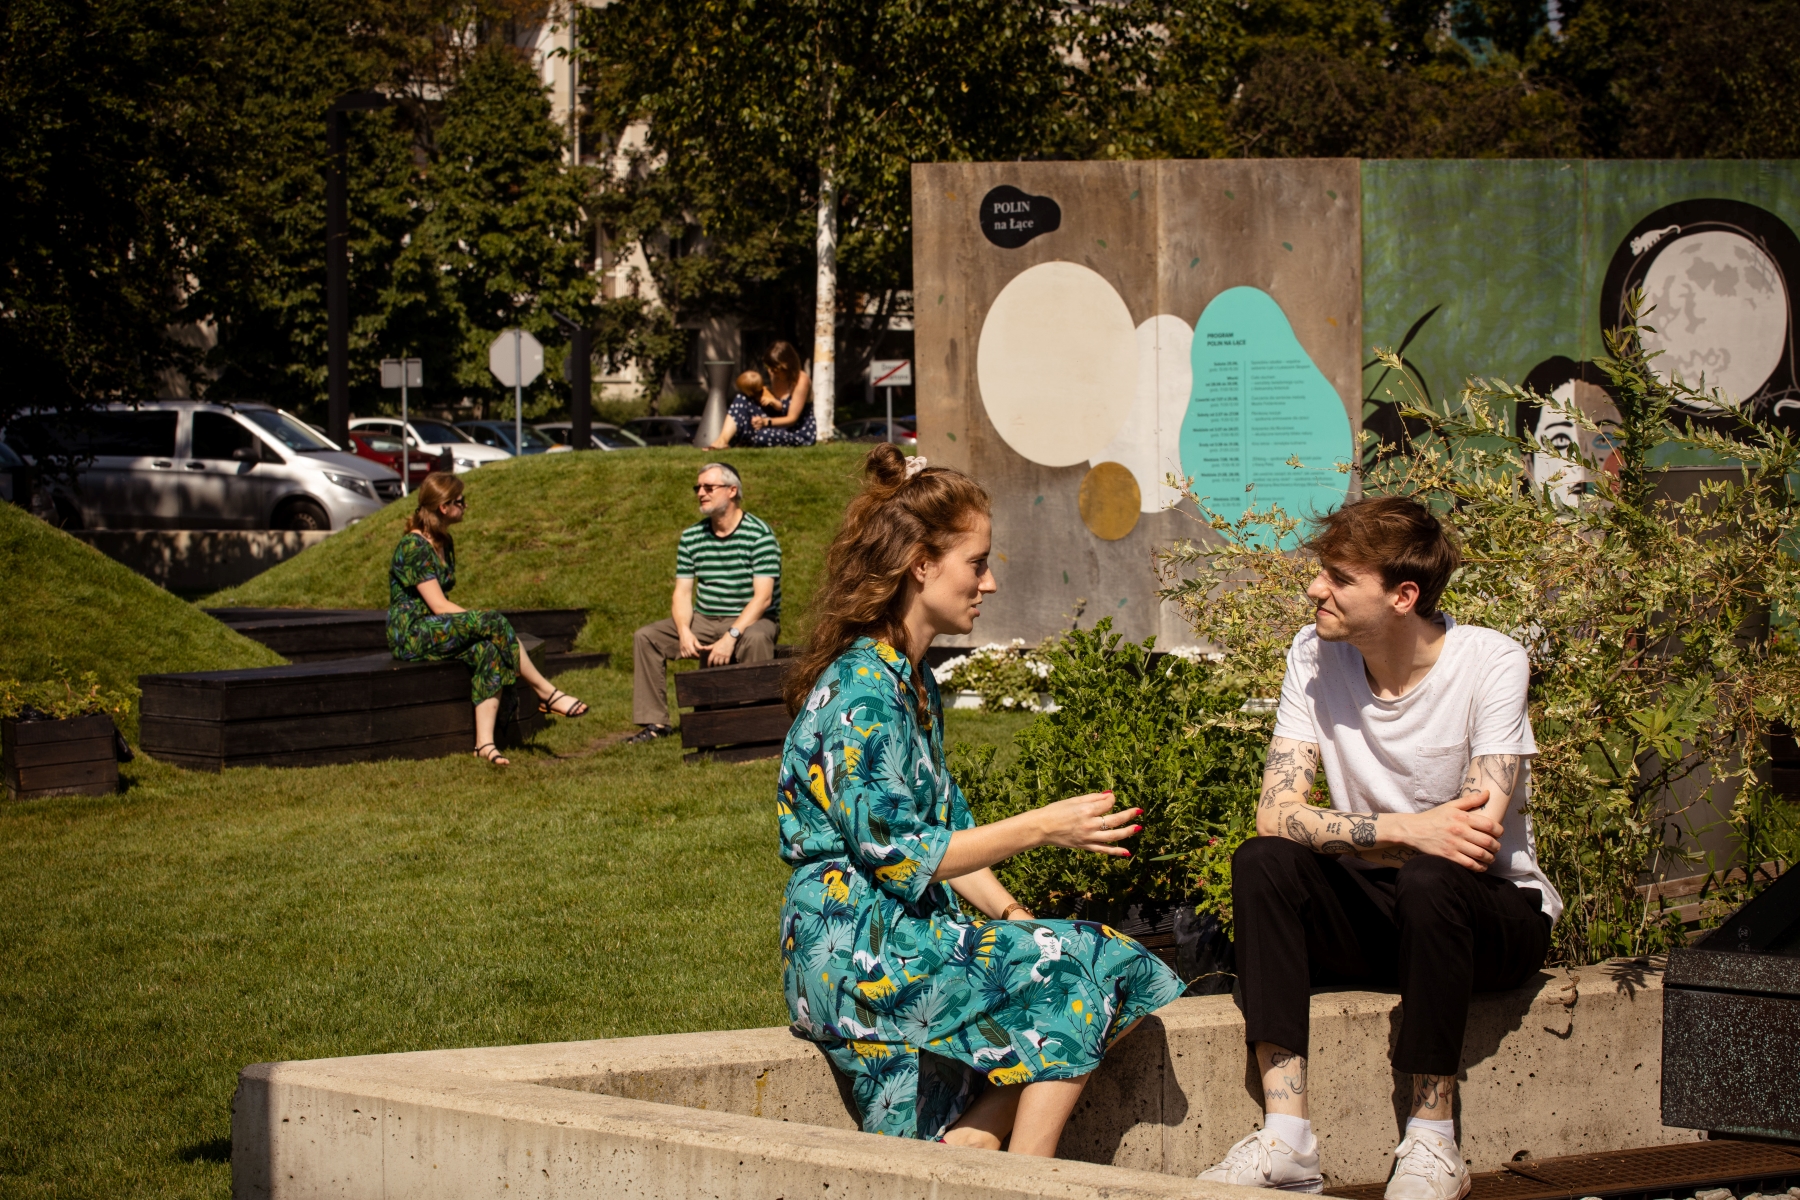 Dziewczyna i chłopak rozmawiają ze sobą, siedząc na murku przy instalacji "POLIN na Łące". W tle, przy muralu siedzą naprzeciw siebie dwie inne osoby.